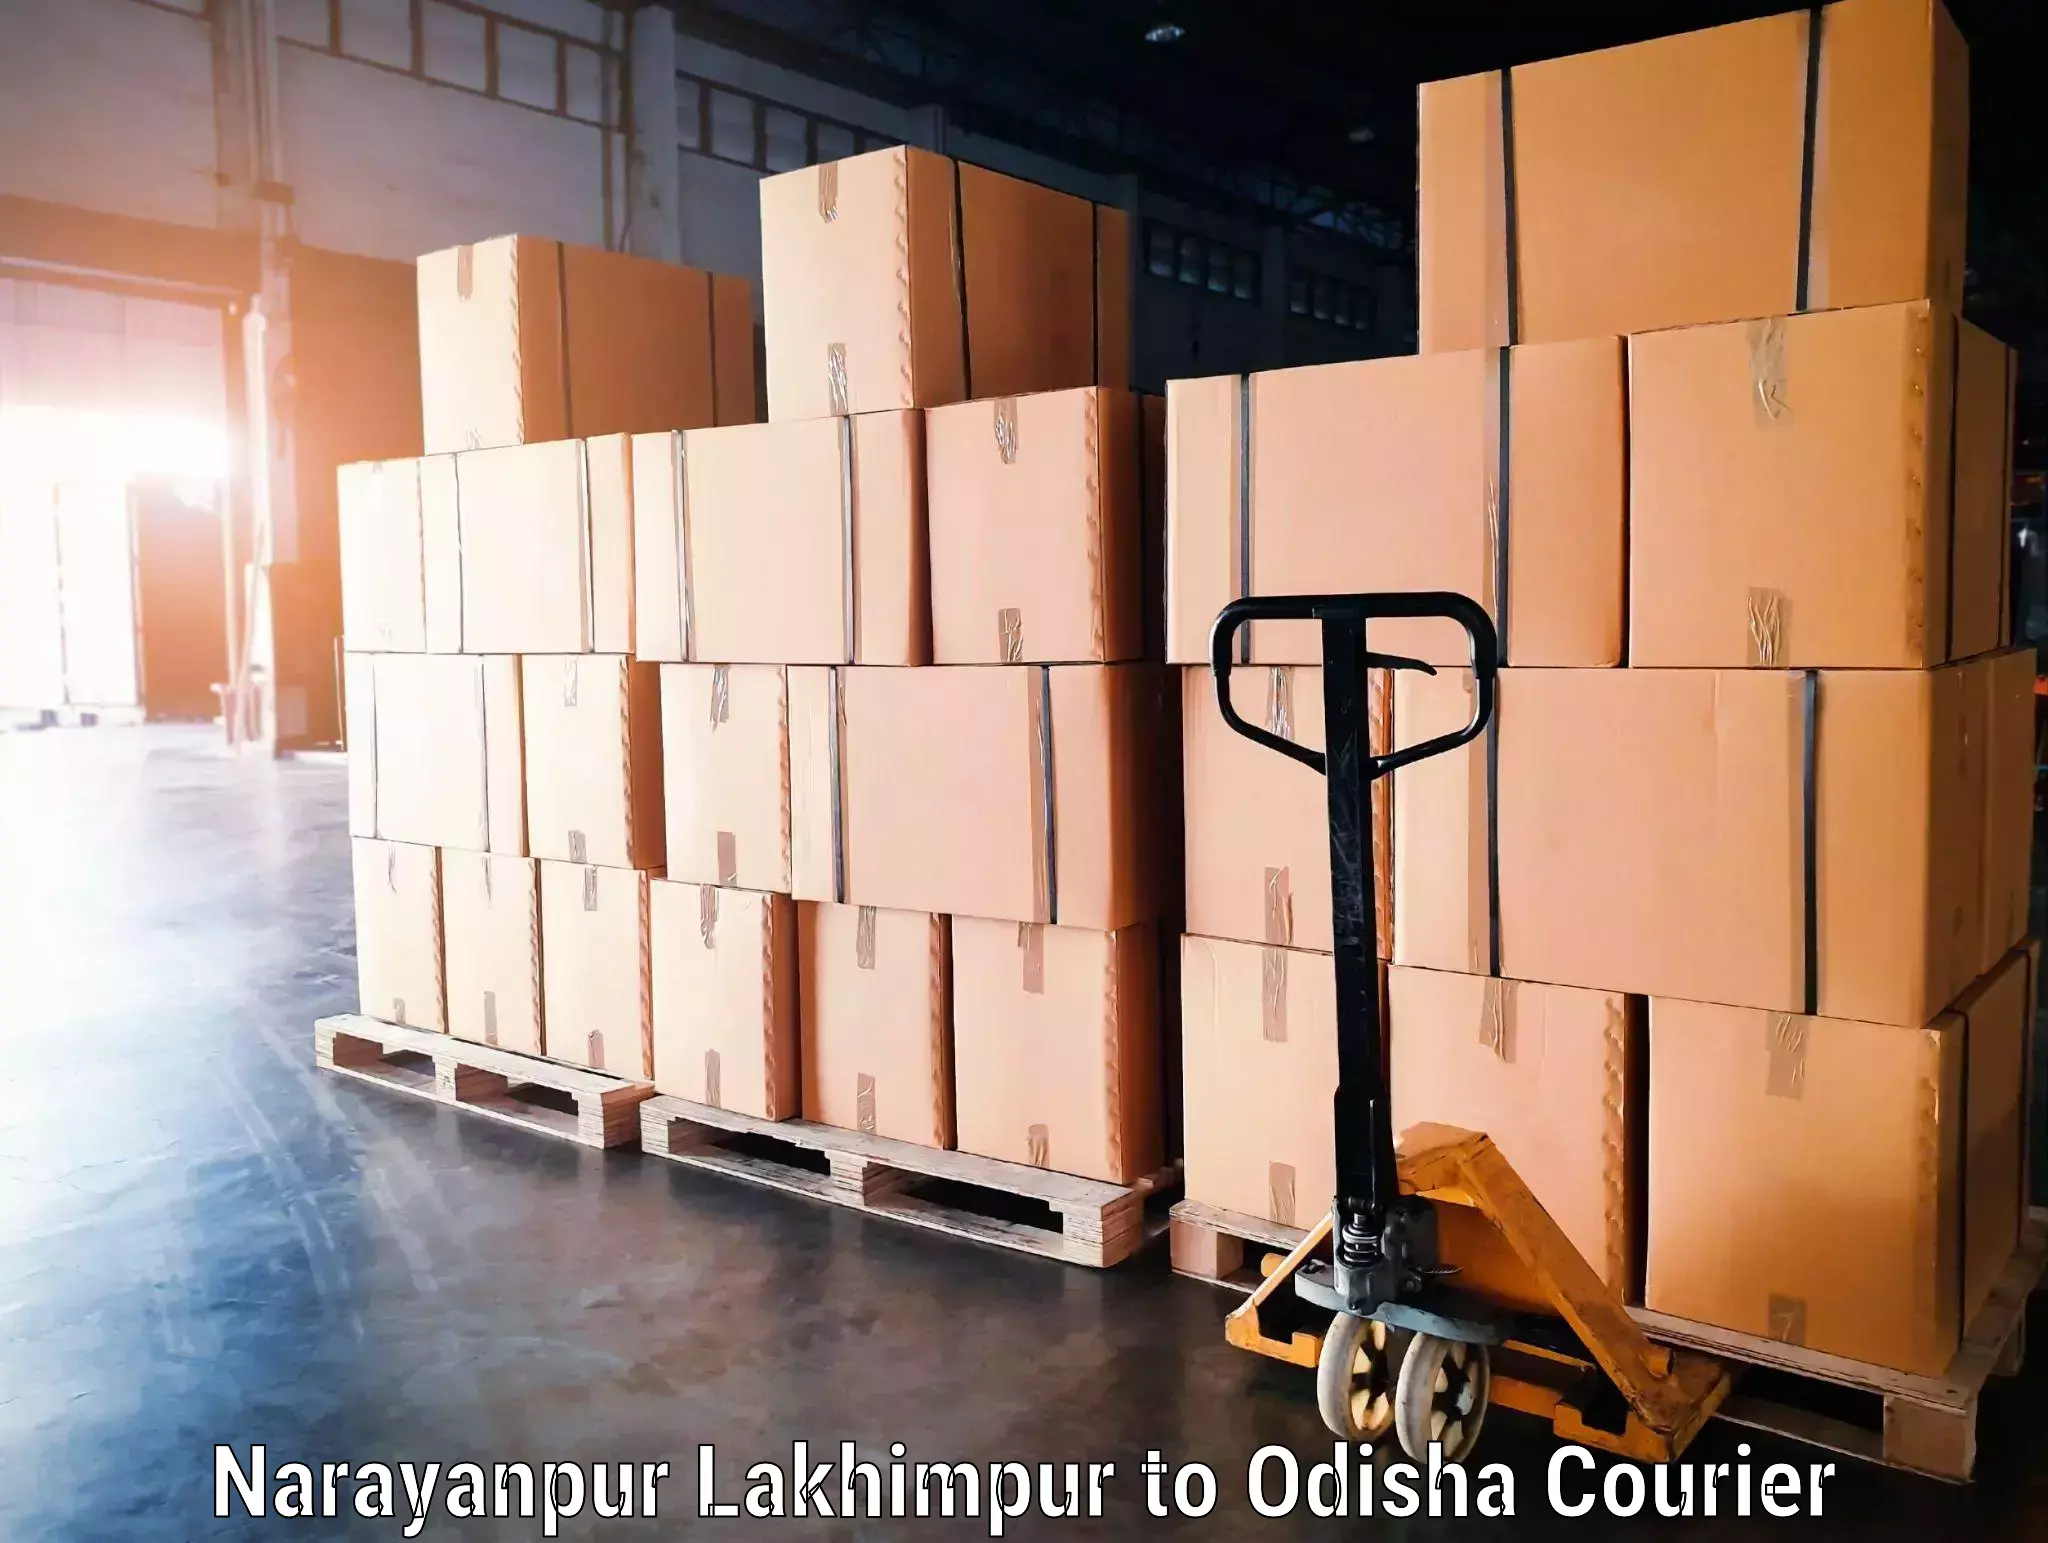 Luggage transport deals Narayanpur Lakhimpur to Dukura